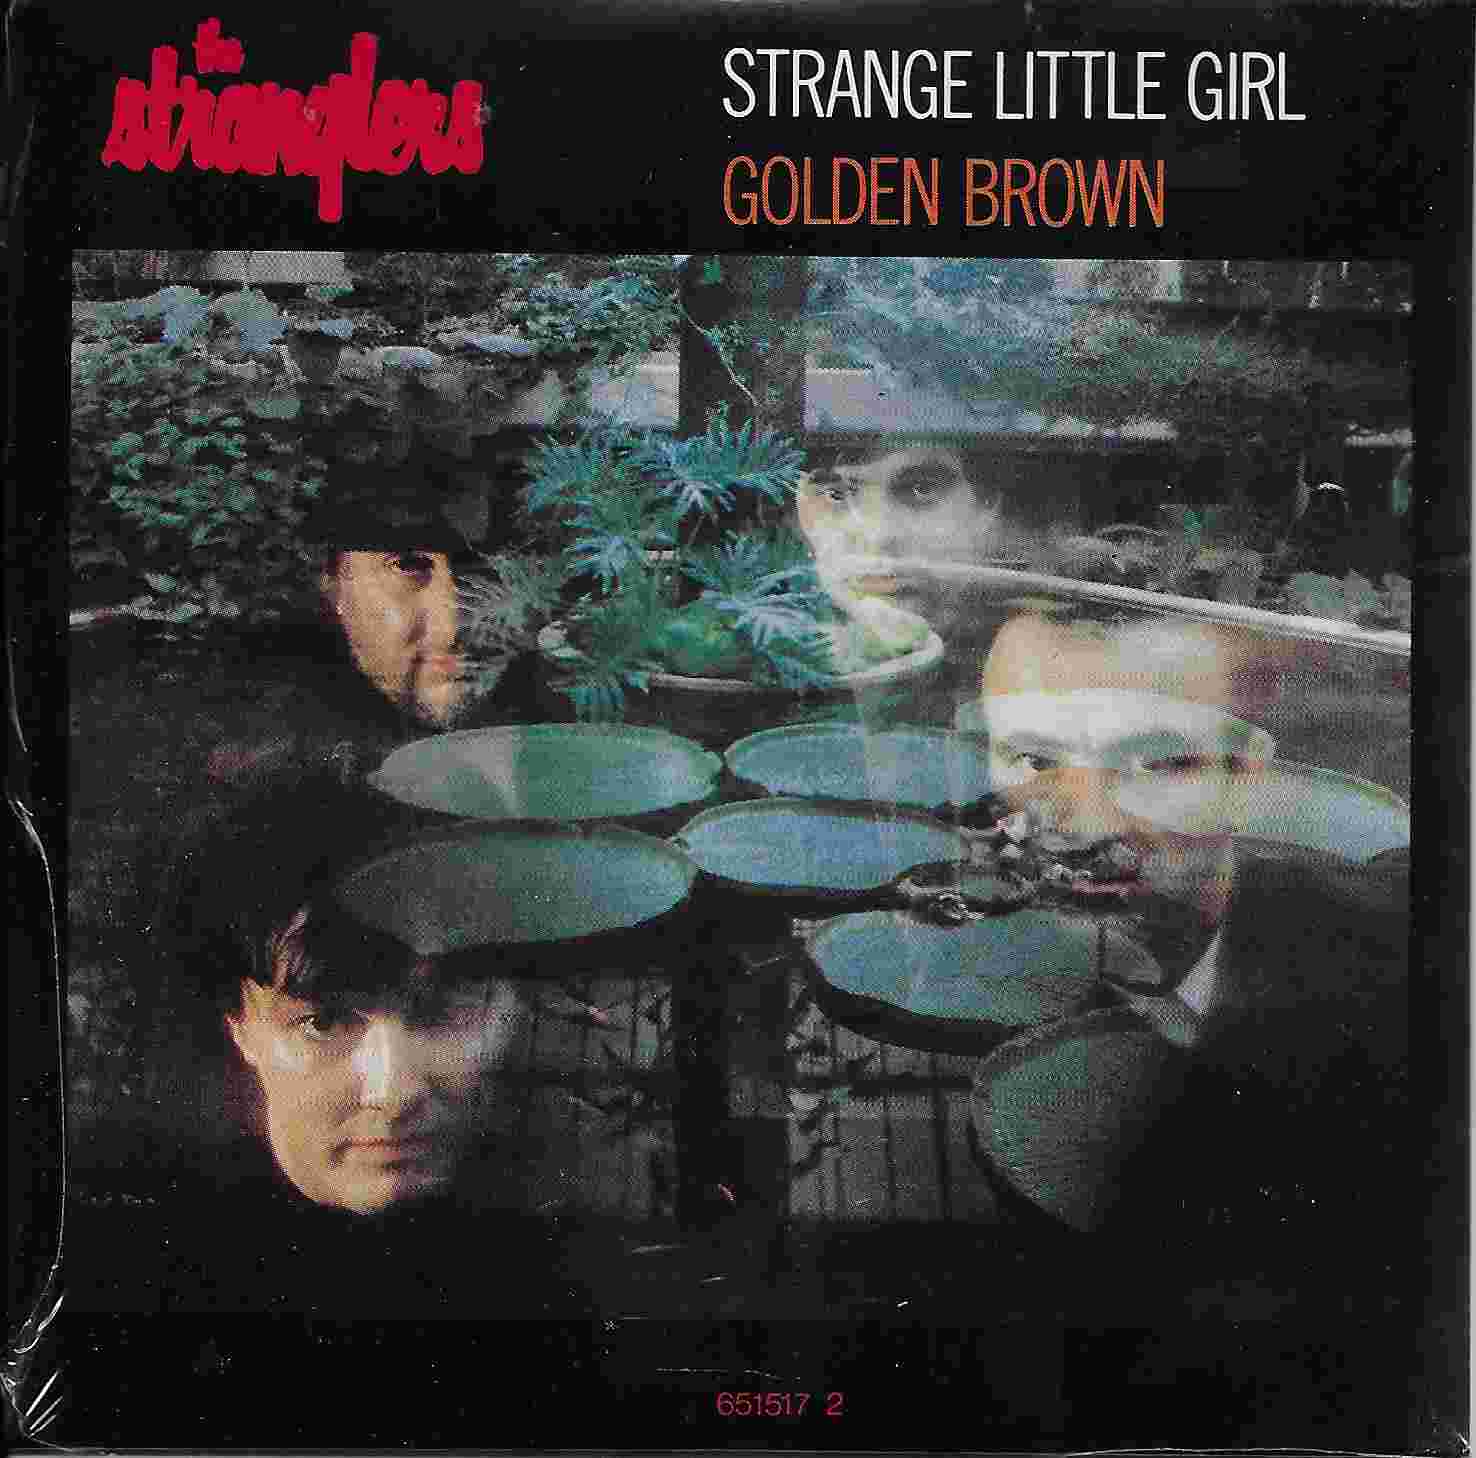 Picture of Strange little girl by artist The Stranglers  from The Stranglers cdsingles